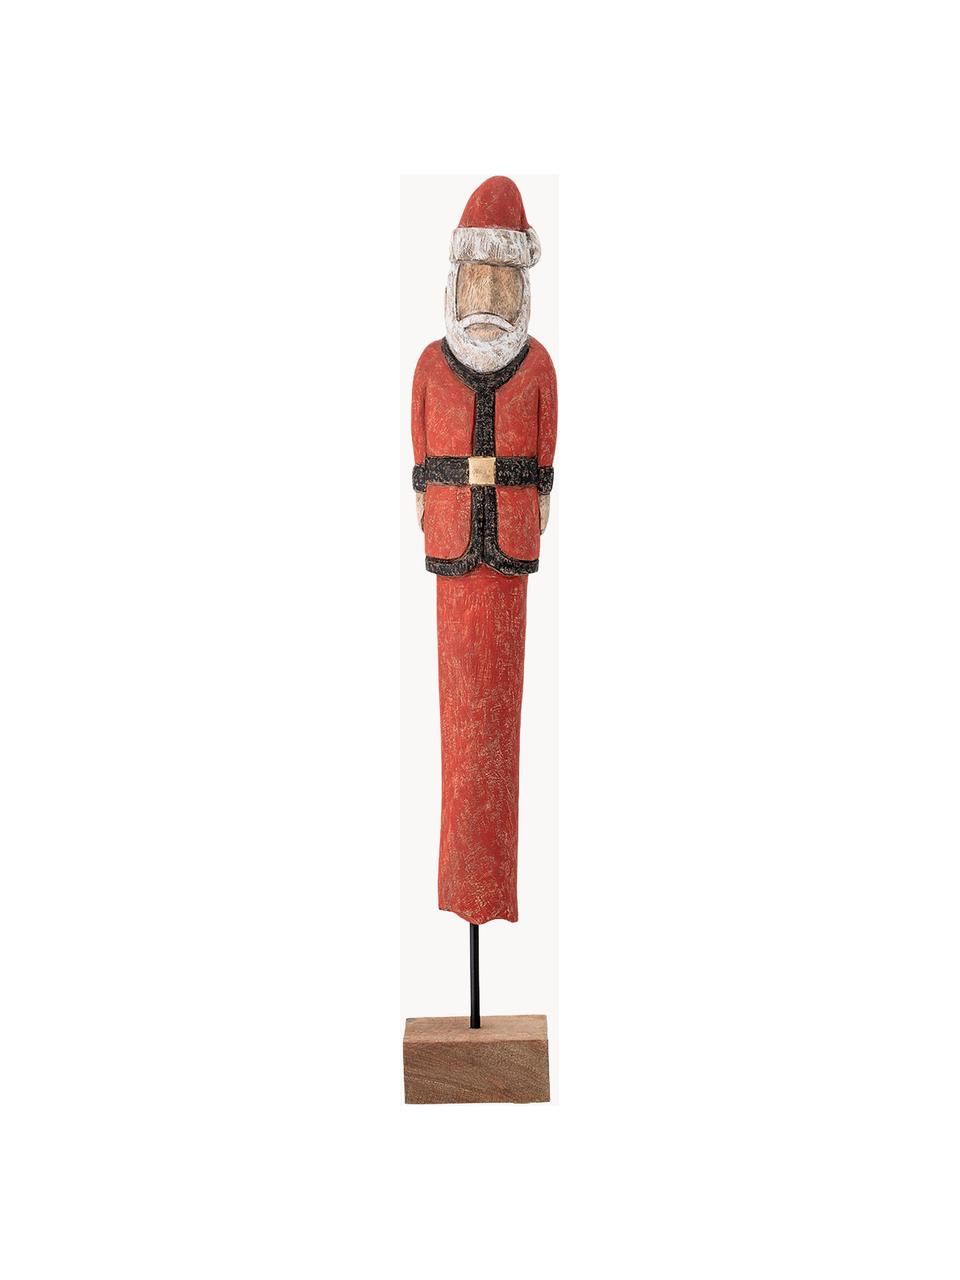 Deko-Weihnachtsmann Santa H 56 cm, Mangoholz, beschichtet, Metall, Rot, Weiss, Schwarz, Helles Holz, B 10 x H 56 cm